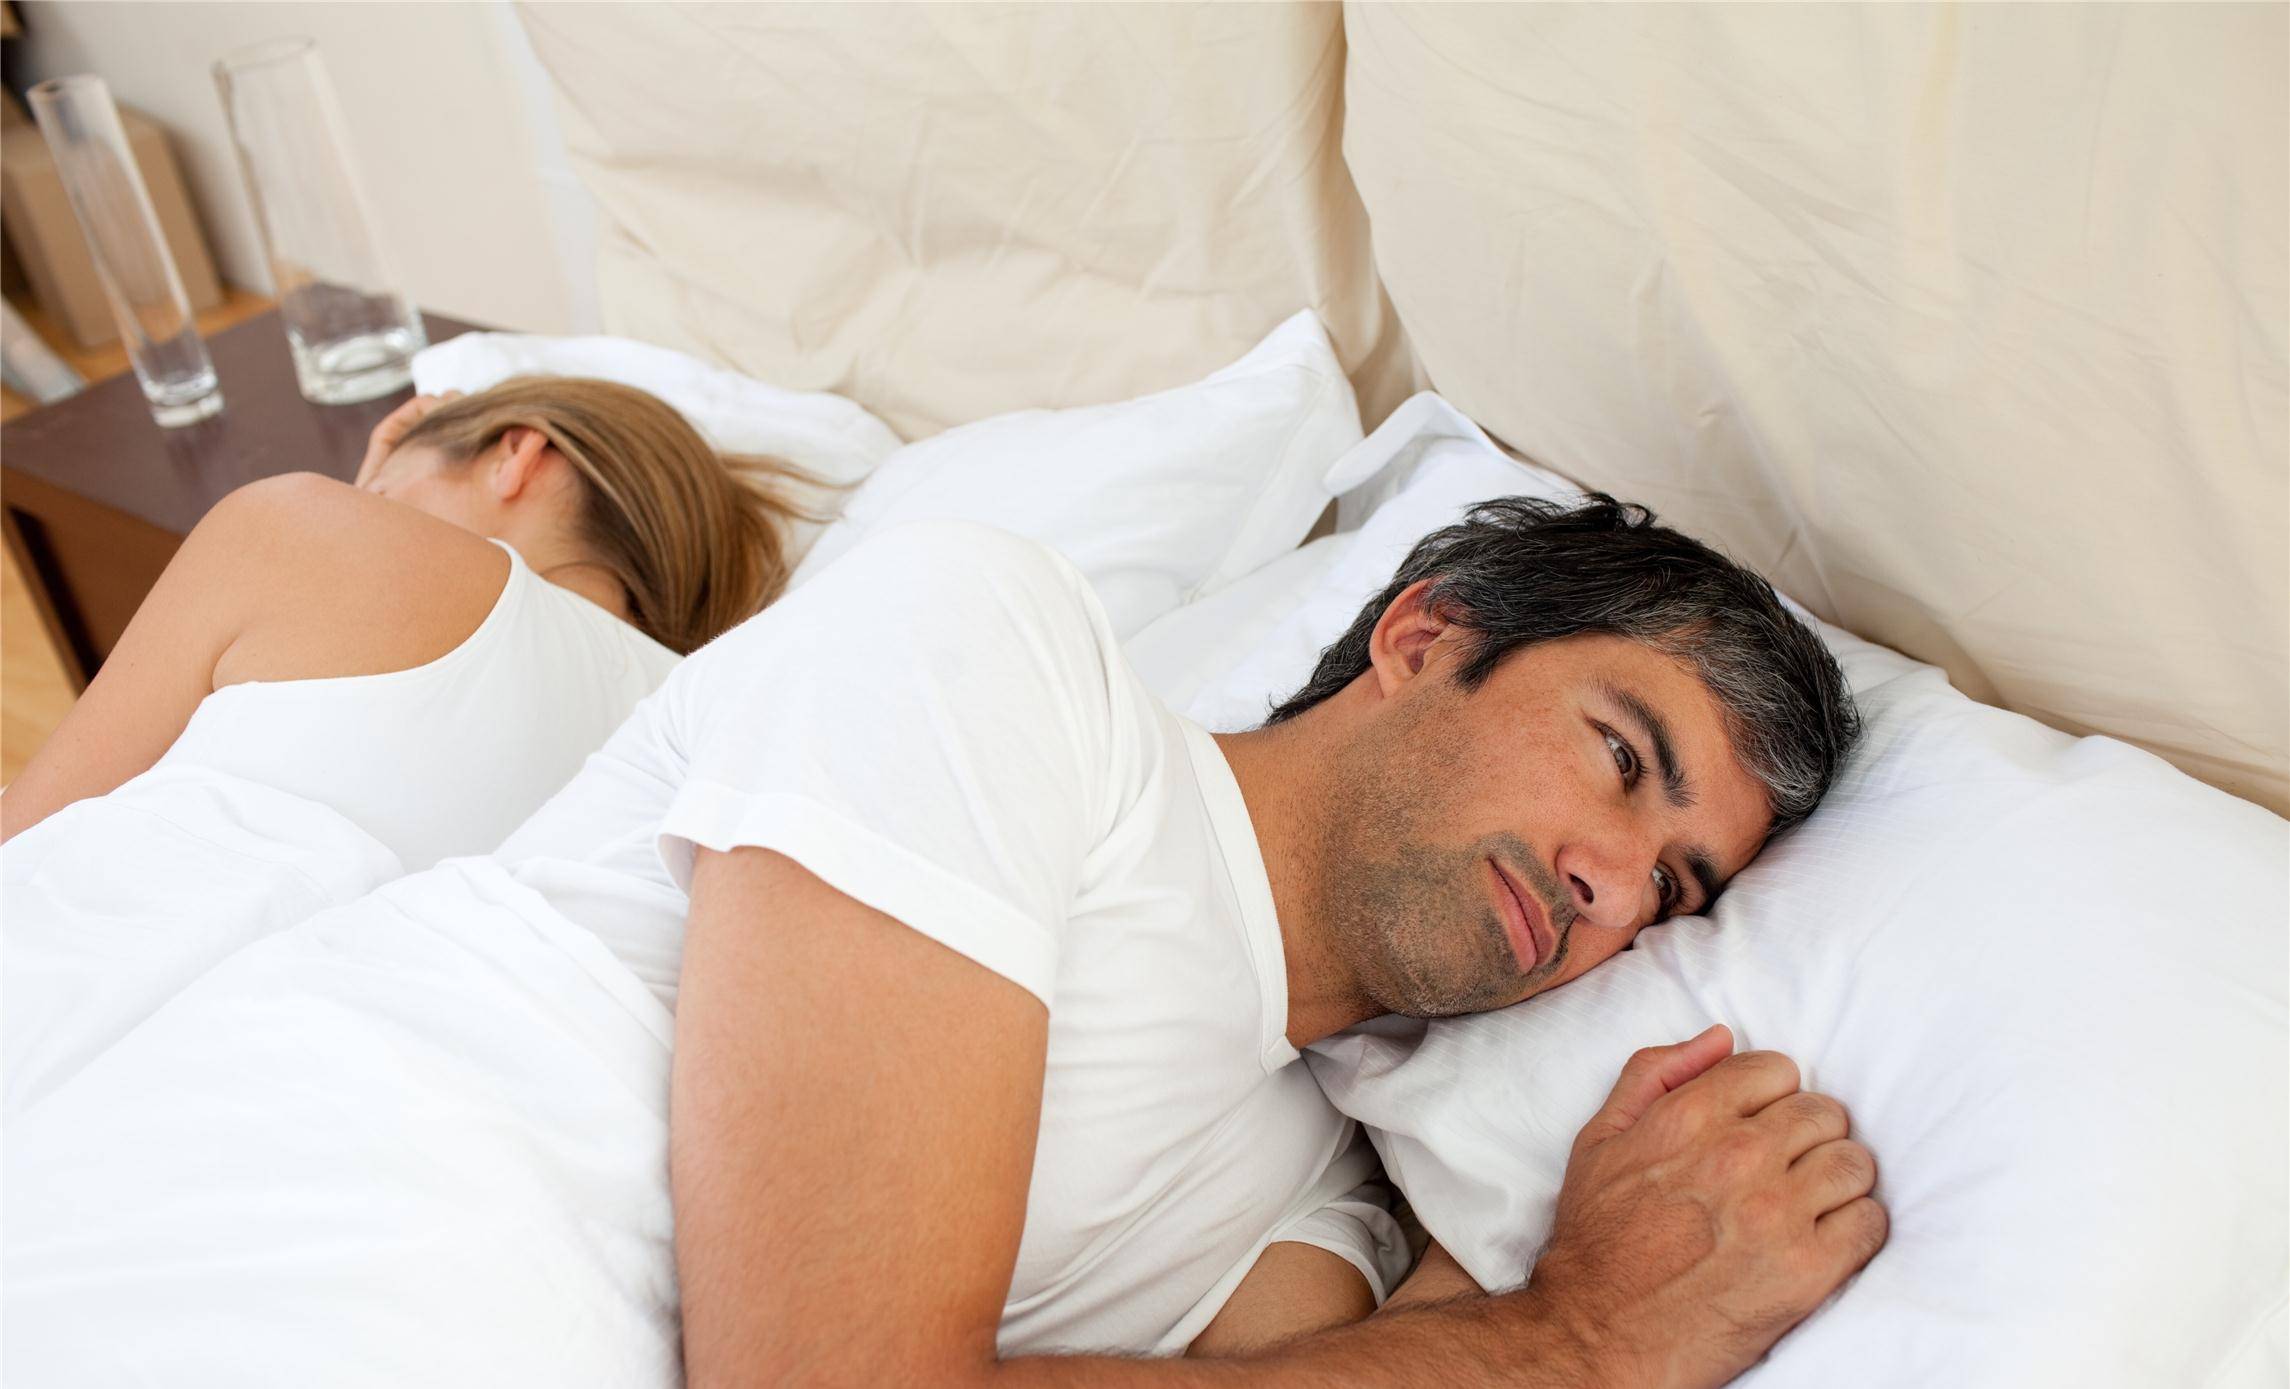 原创男人睡觉时,该不该一丝不挂?说法有很多,有些人还蒙在鼓里